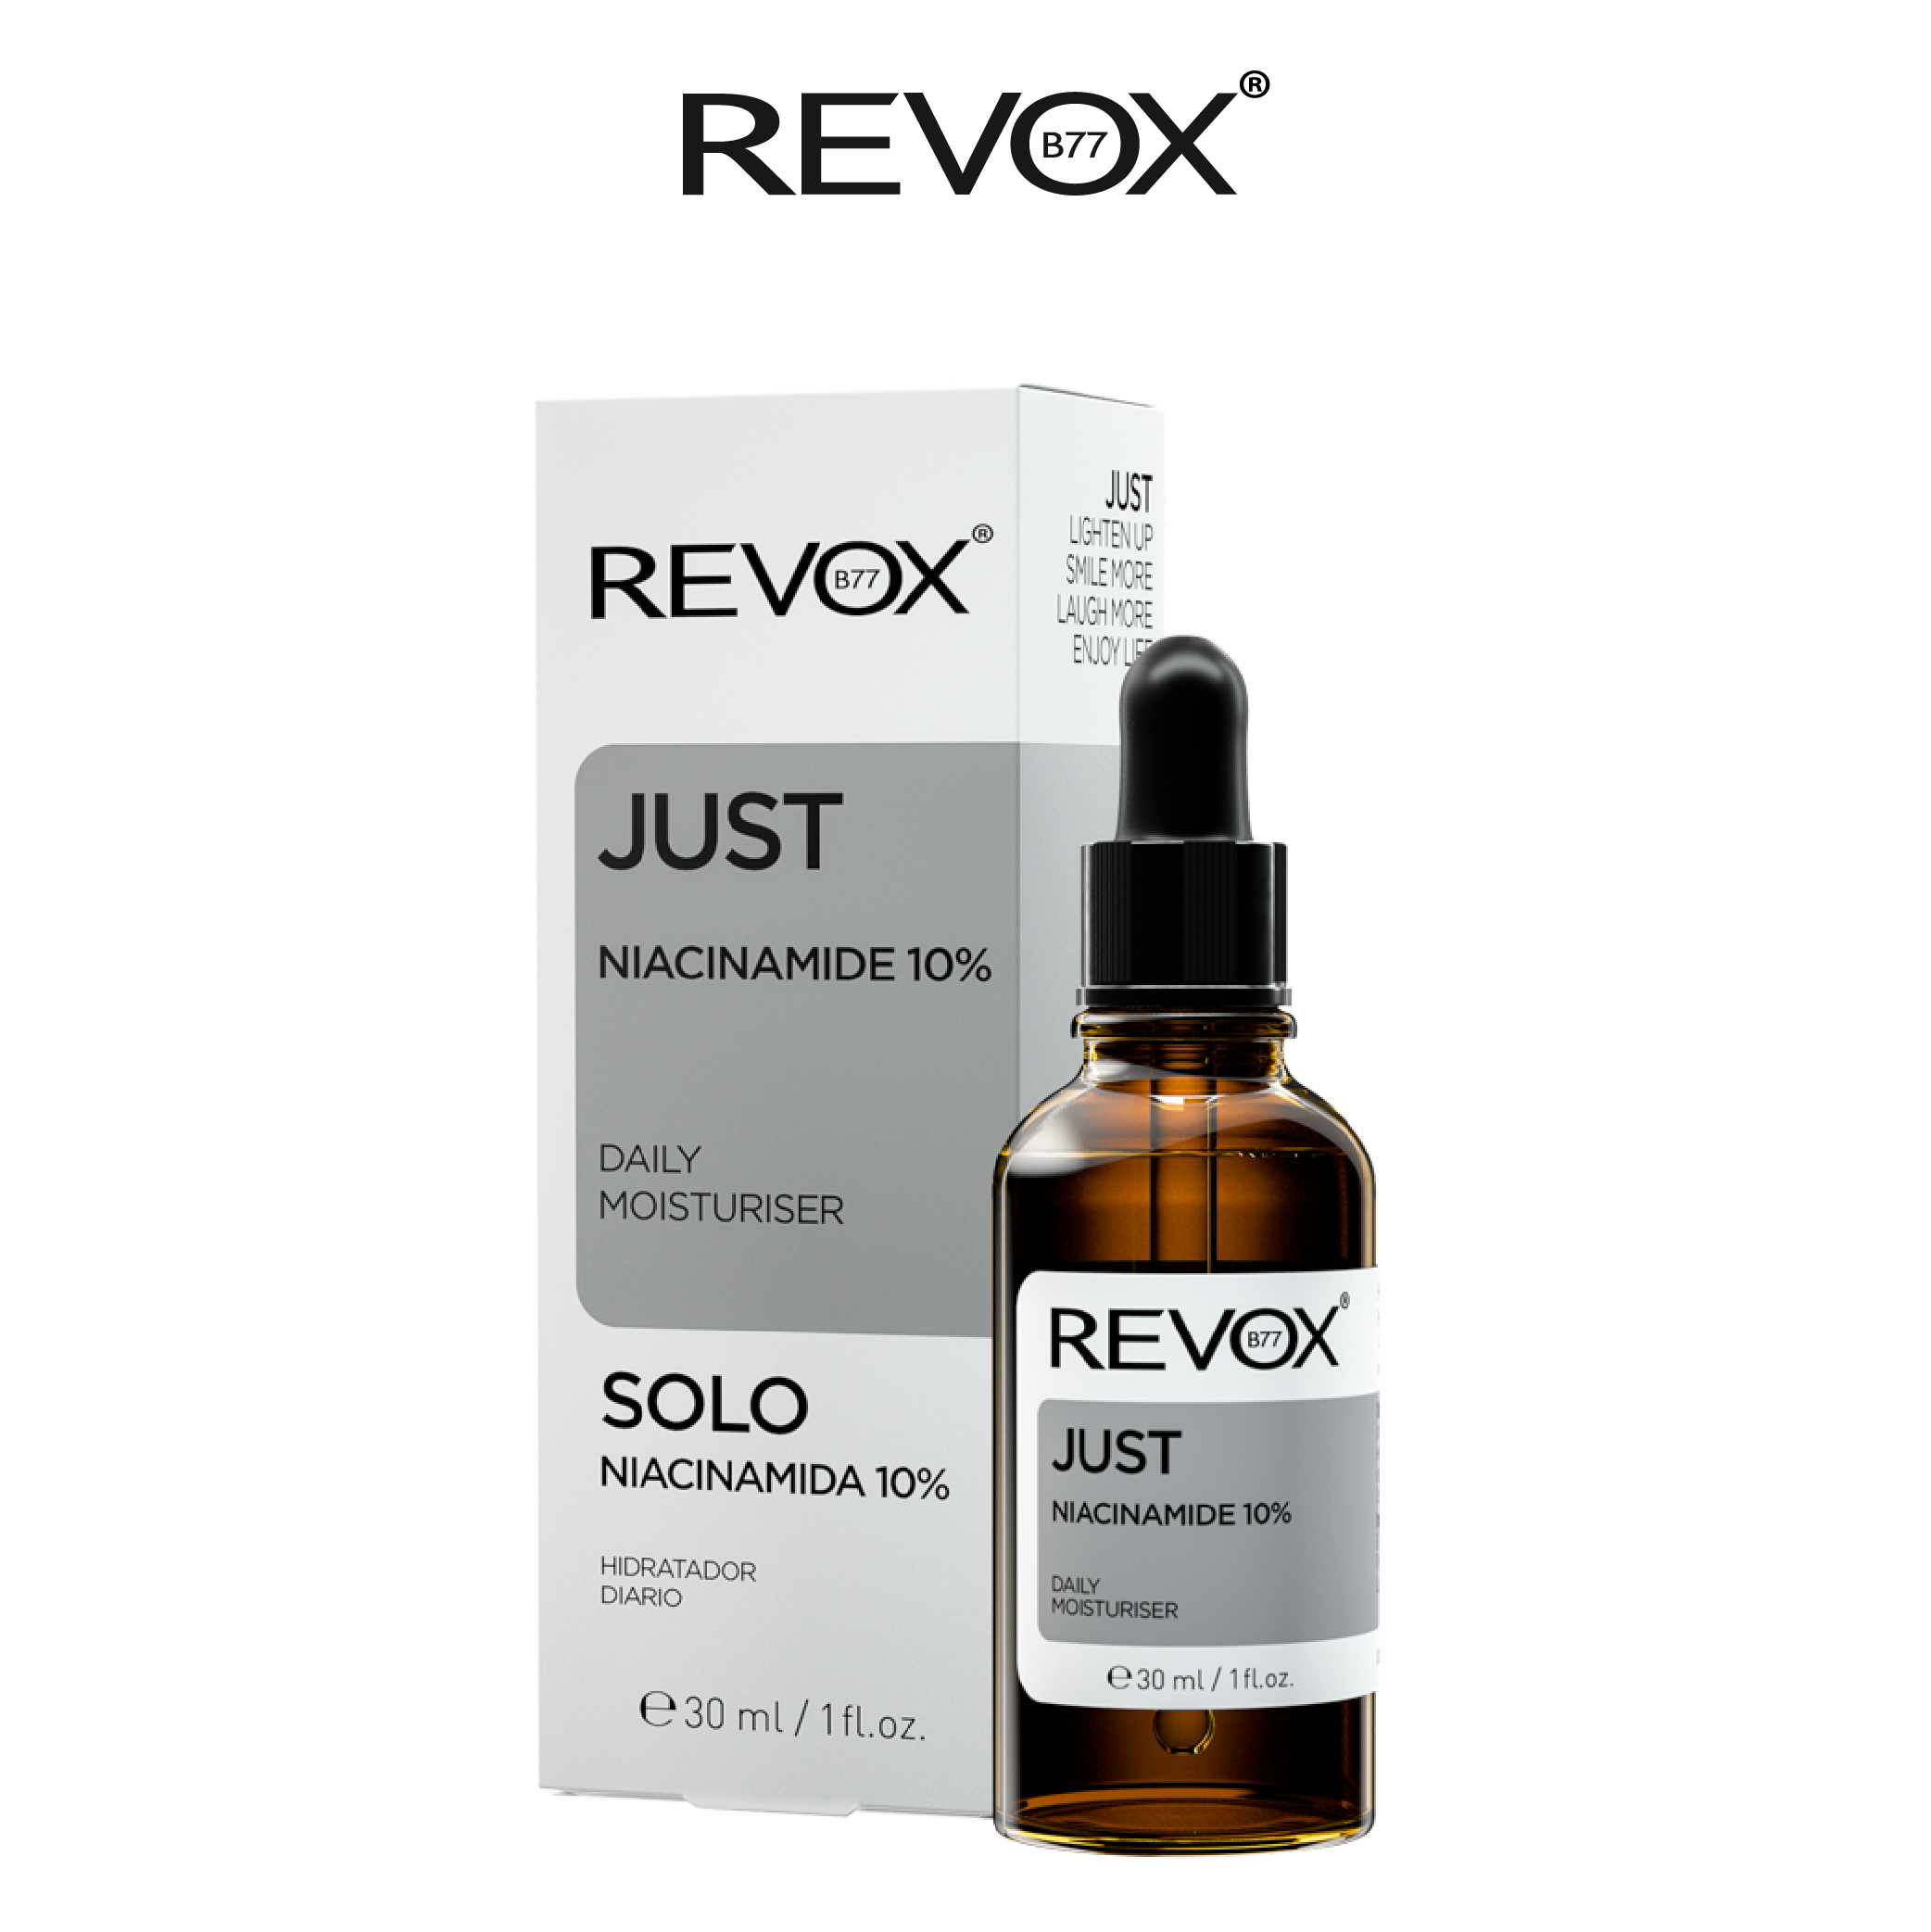 Tinh chất dưỡng ẩm hàng ngày cho da mặt và cổ Revox B77 Just - Niacinamide 10%